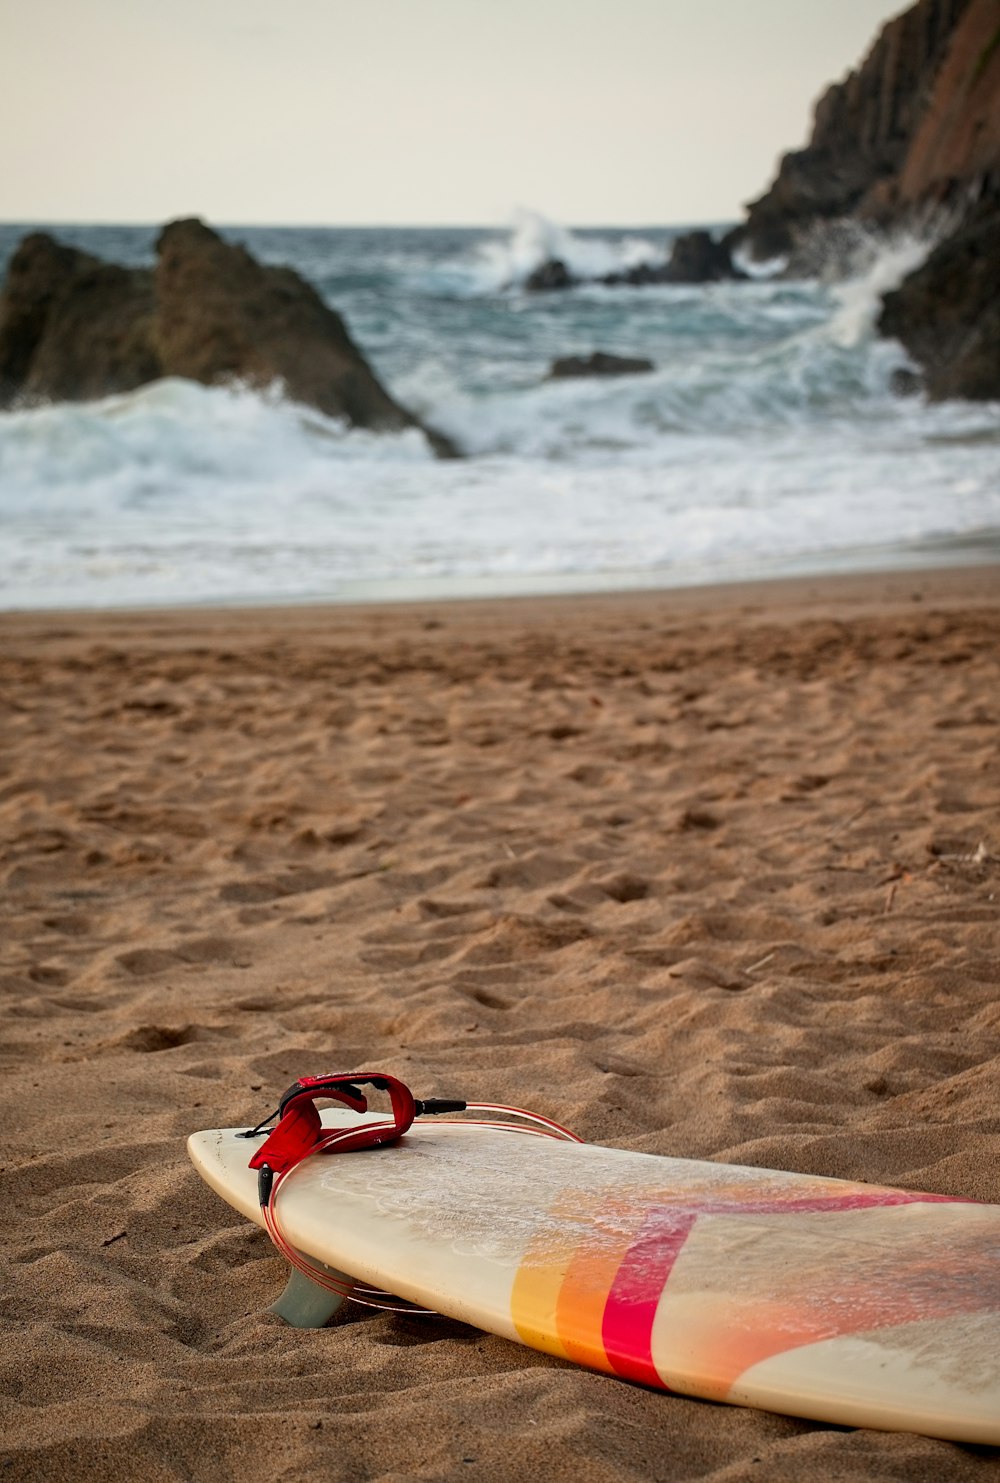 a surfboard on a beach